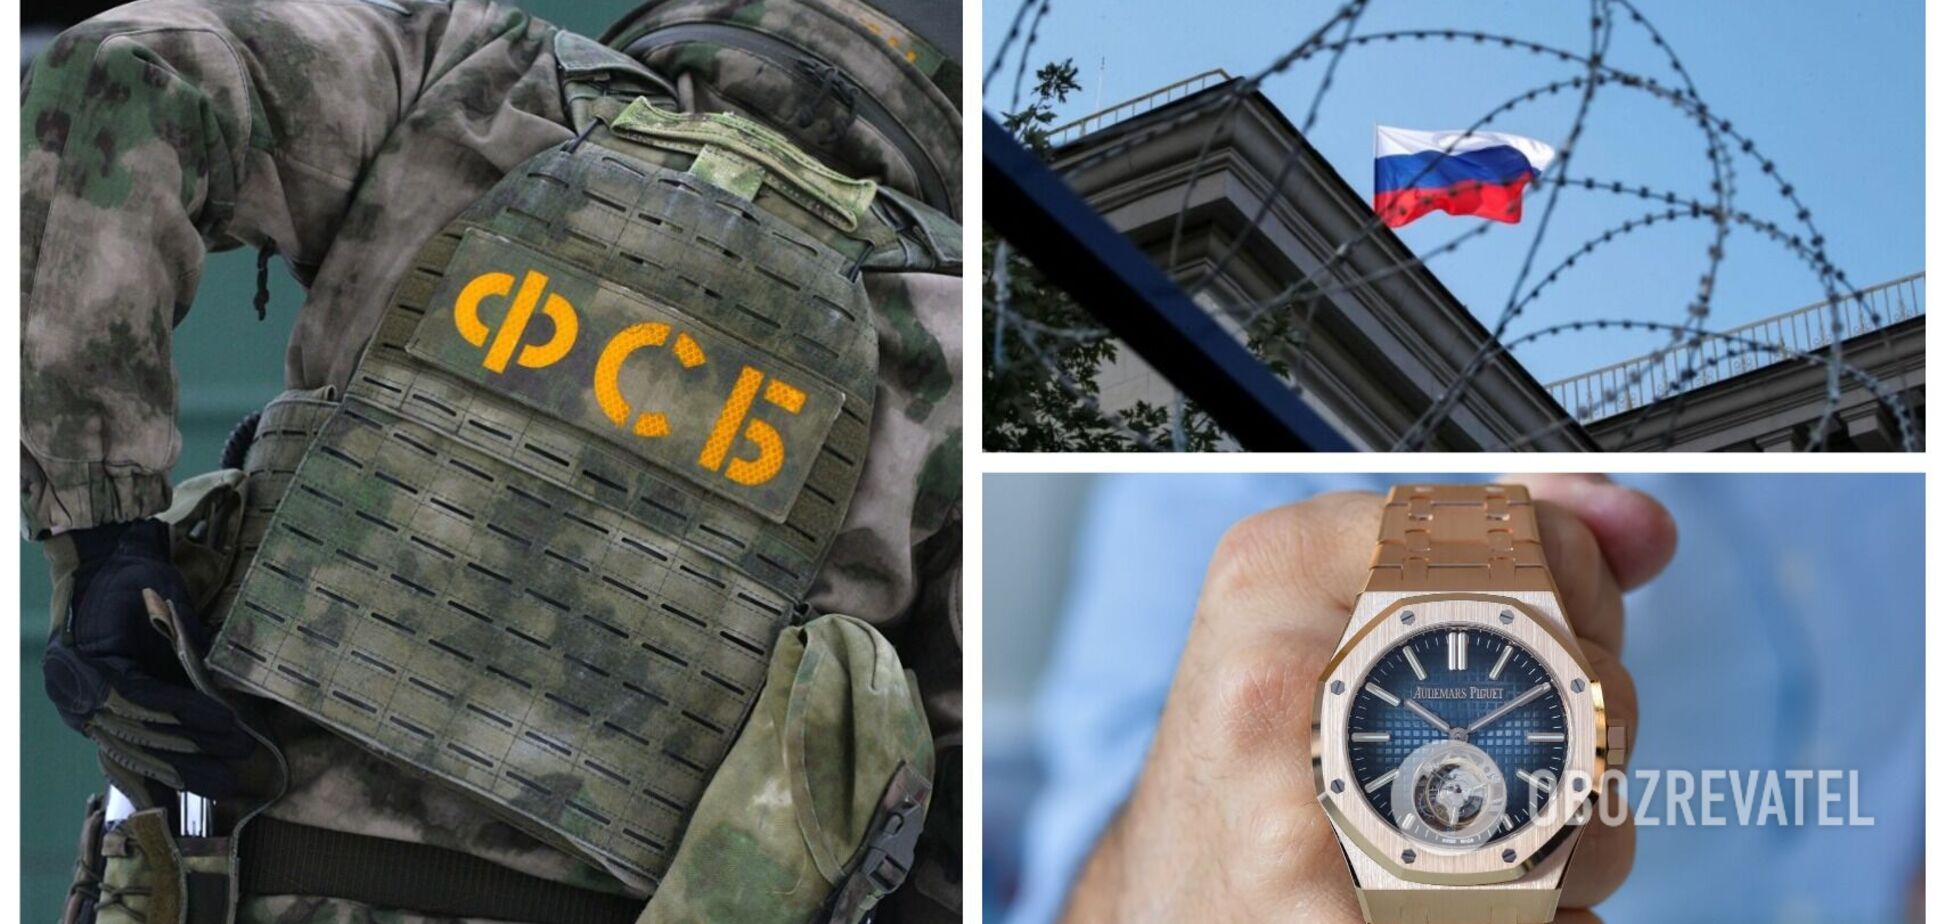 ФСБ конфисковала швейцарские часы Audemars Piguet на российских складах в ответ на западные санкции